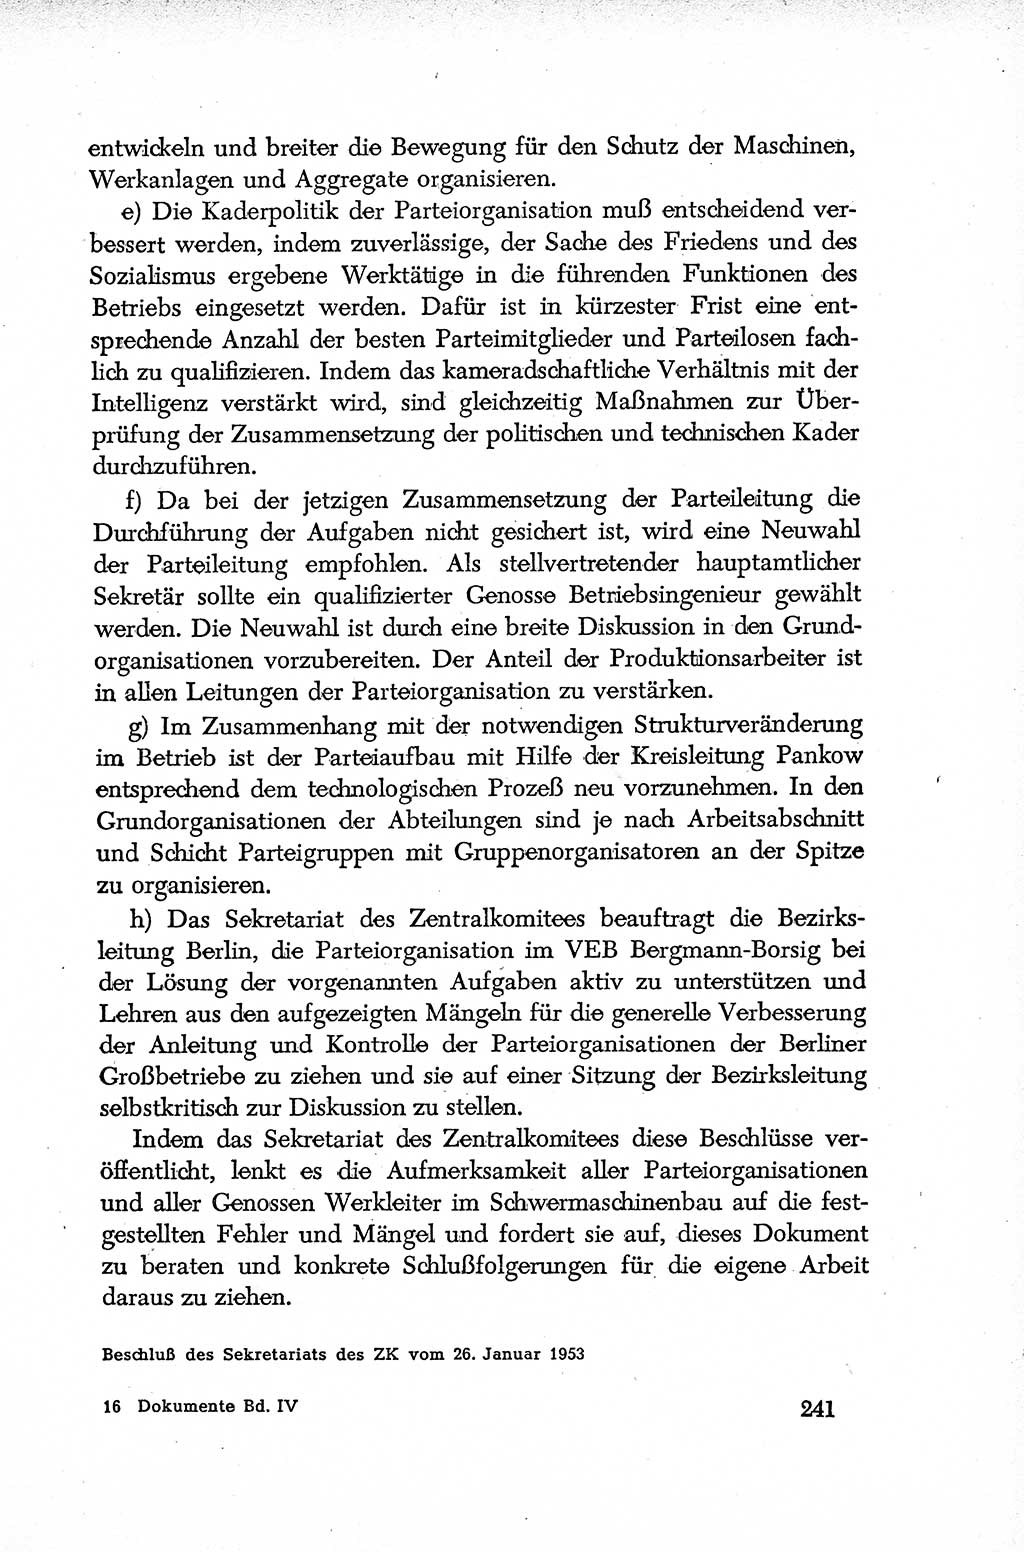 Dokumente der Sozialistischen Einheitspartei Deutschlands (SED) [Deutsche Demokratische Republik (DDR)] 1952-1953, Seite 241 (Dok. SED DDR 1952-1953, S. 241)